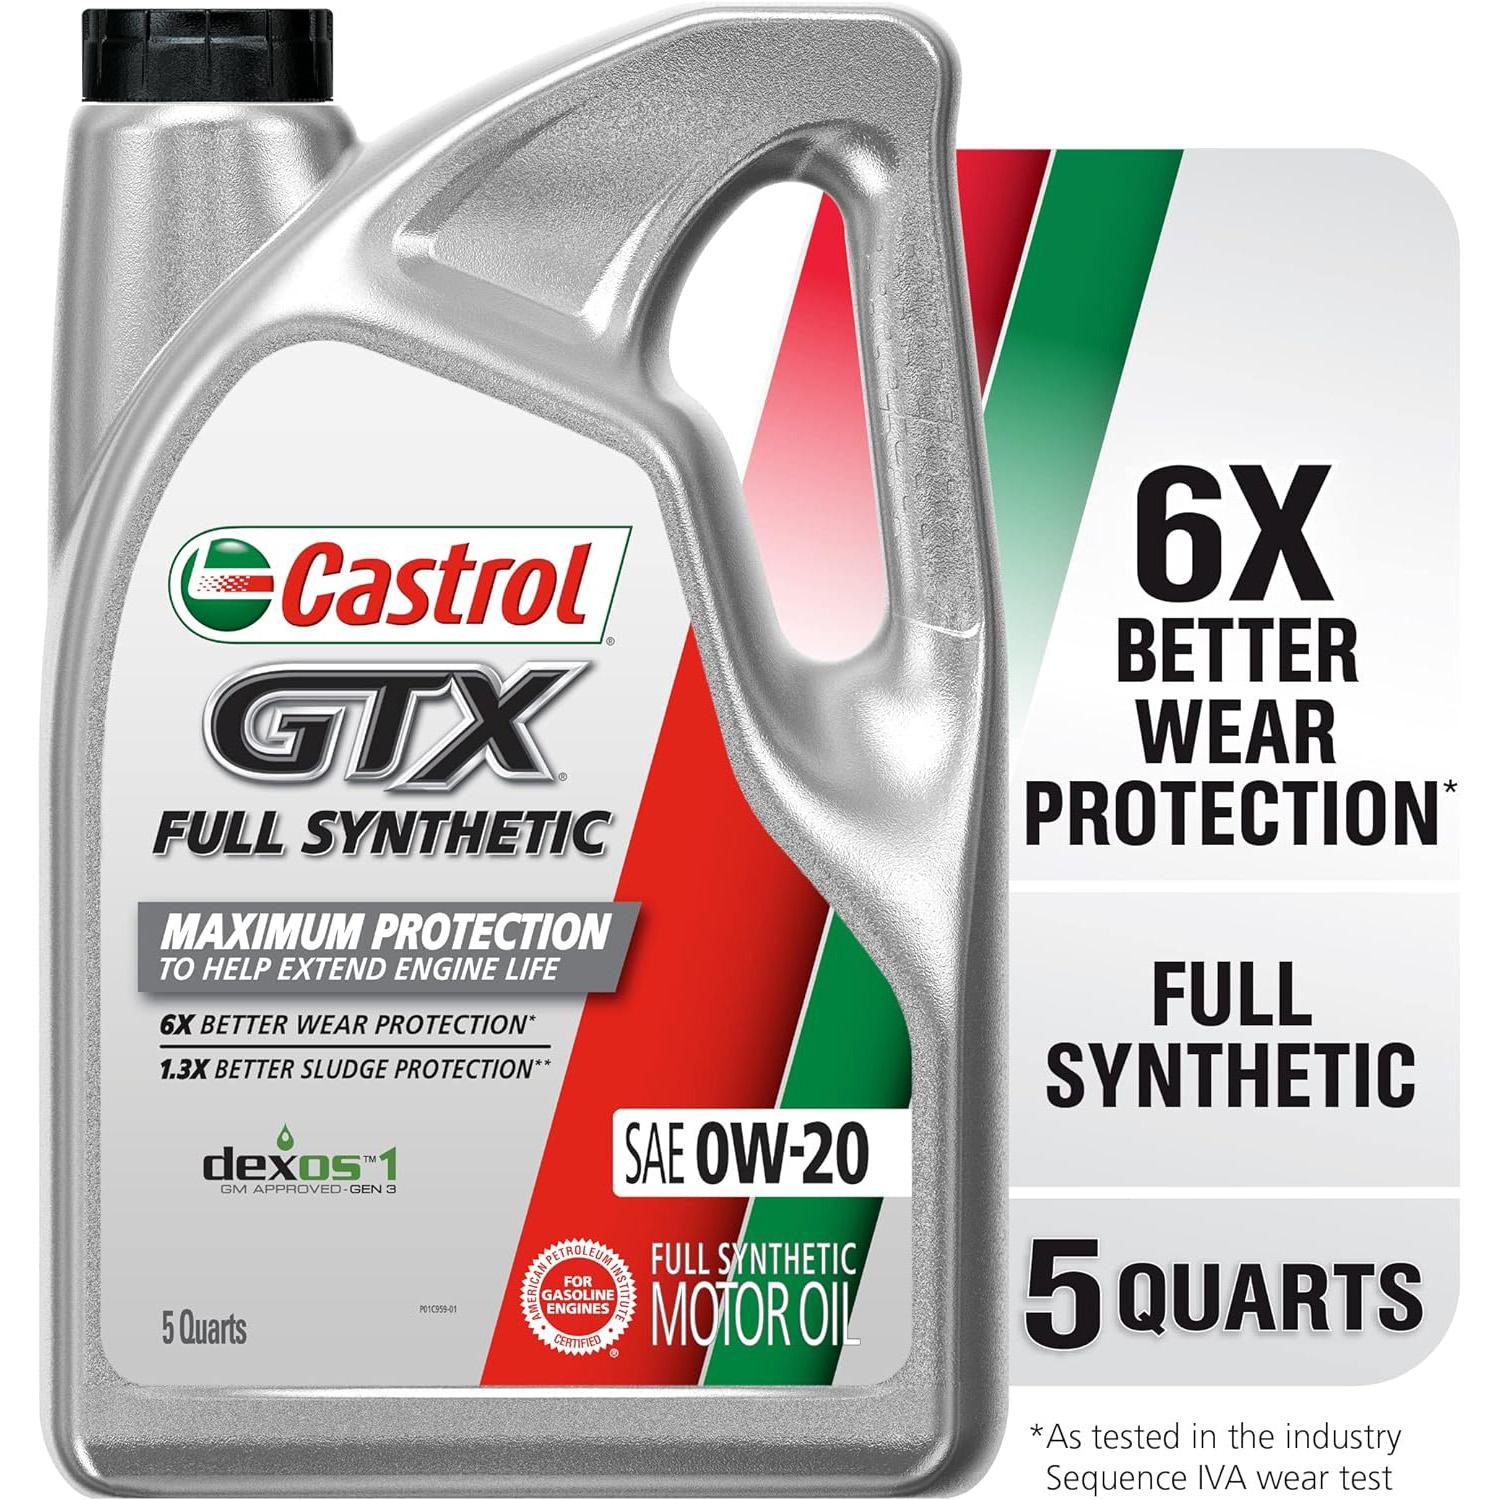 Castrol GTX Full Synthetic 0W-20 Motor Oil for $20.48